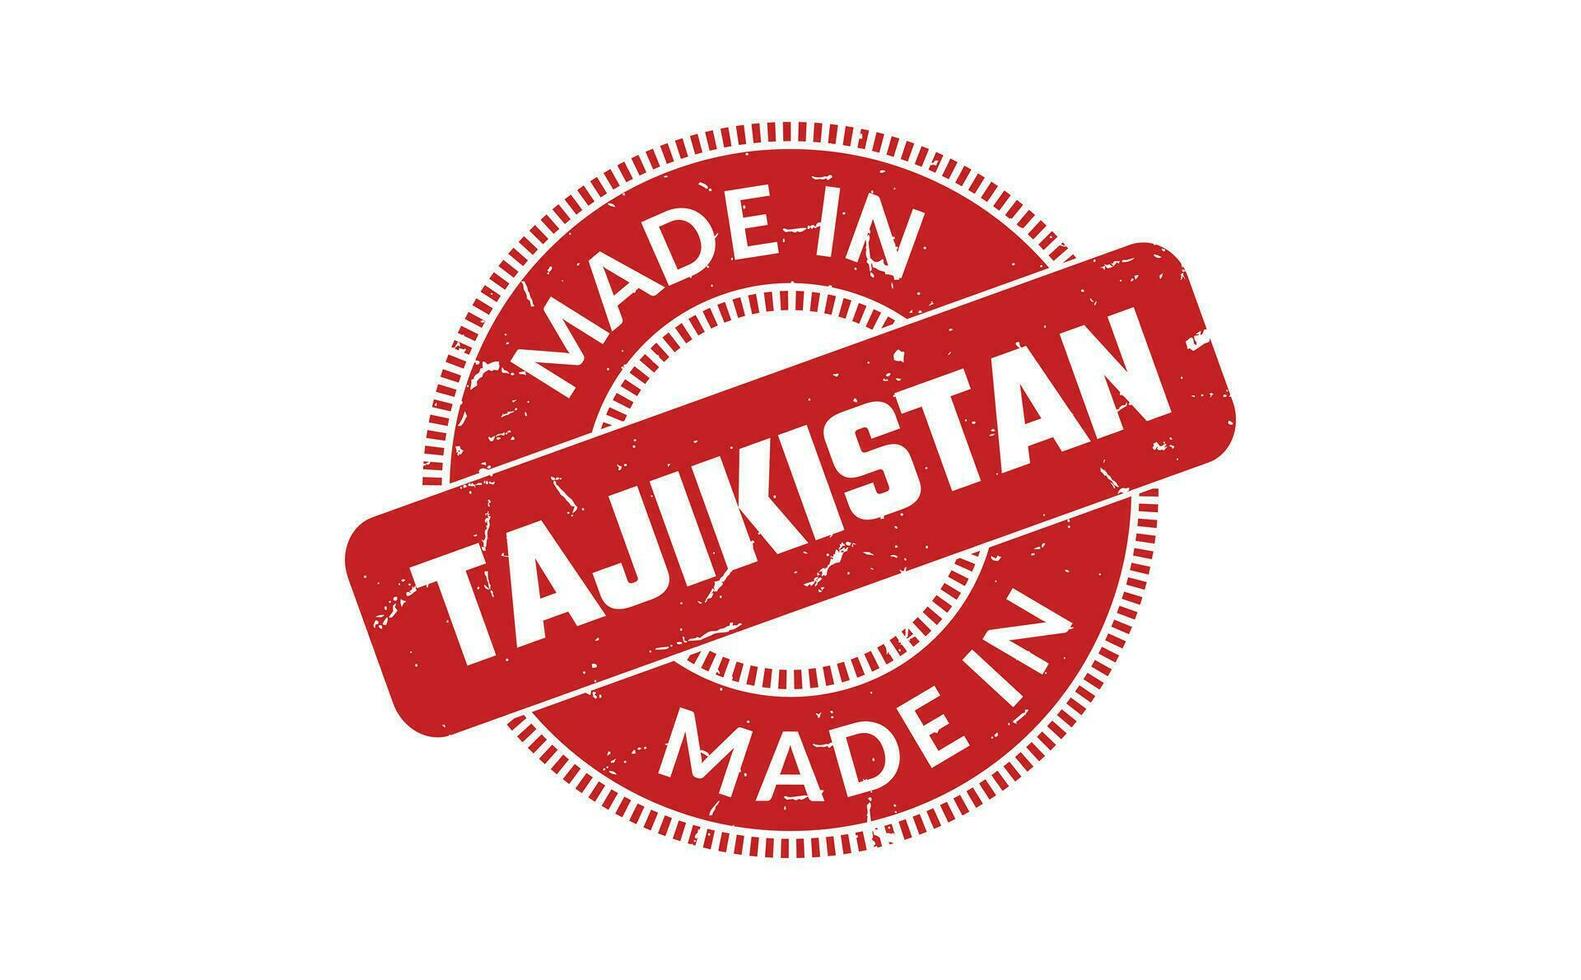 fabriqué dans le tadjikistan caoutchouc timbre vecteur